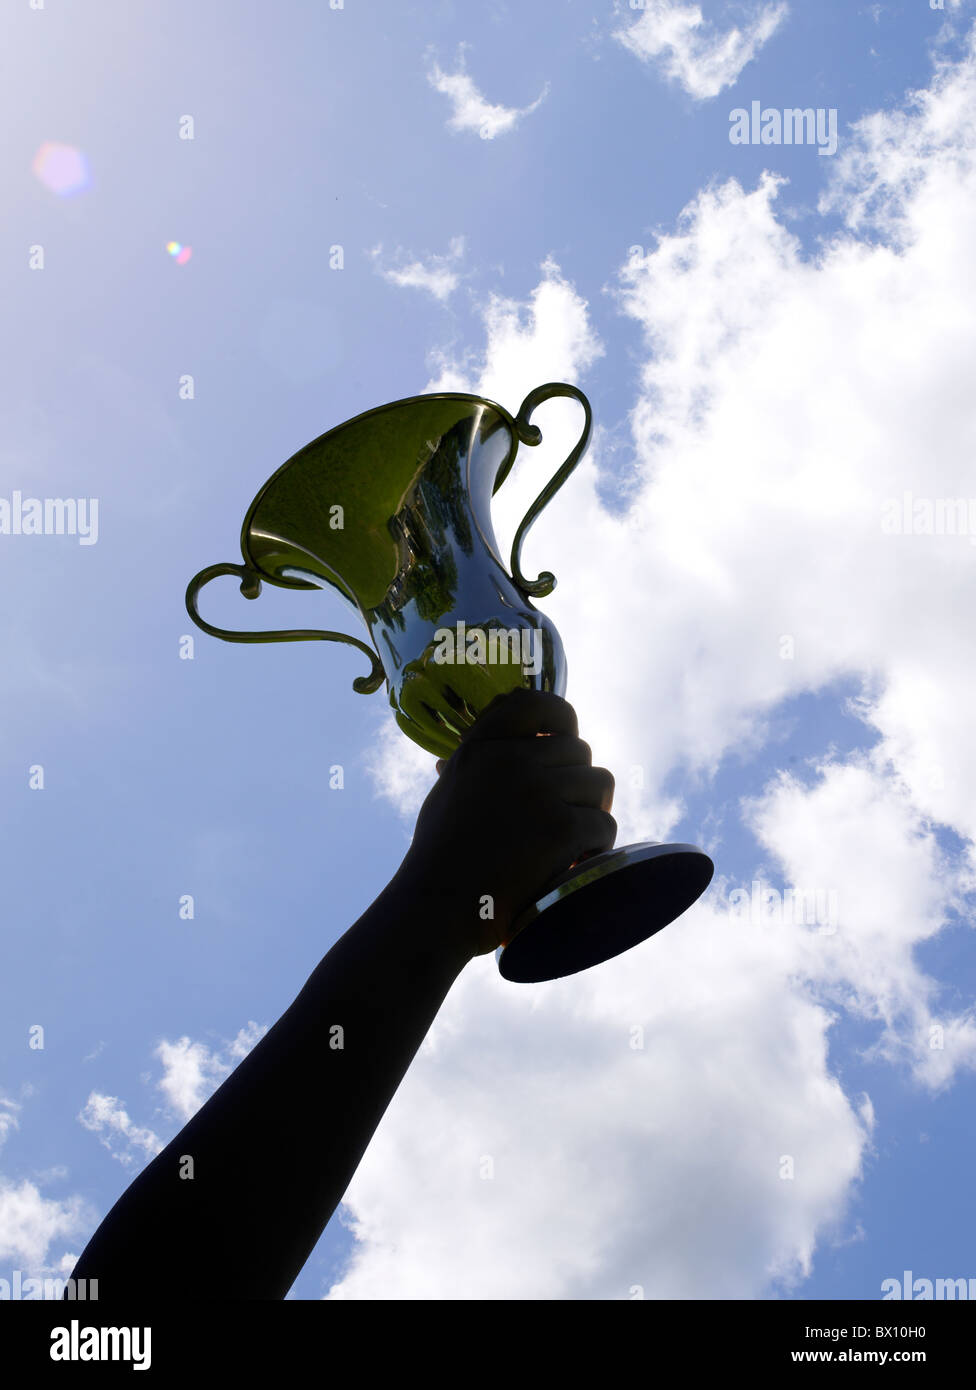 Une personne victorieuse tient une grande coupe de trophée brillante, silhouette sur un ciel bleu vif avec quelques nuages tortueux. Banque D'Images